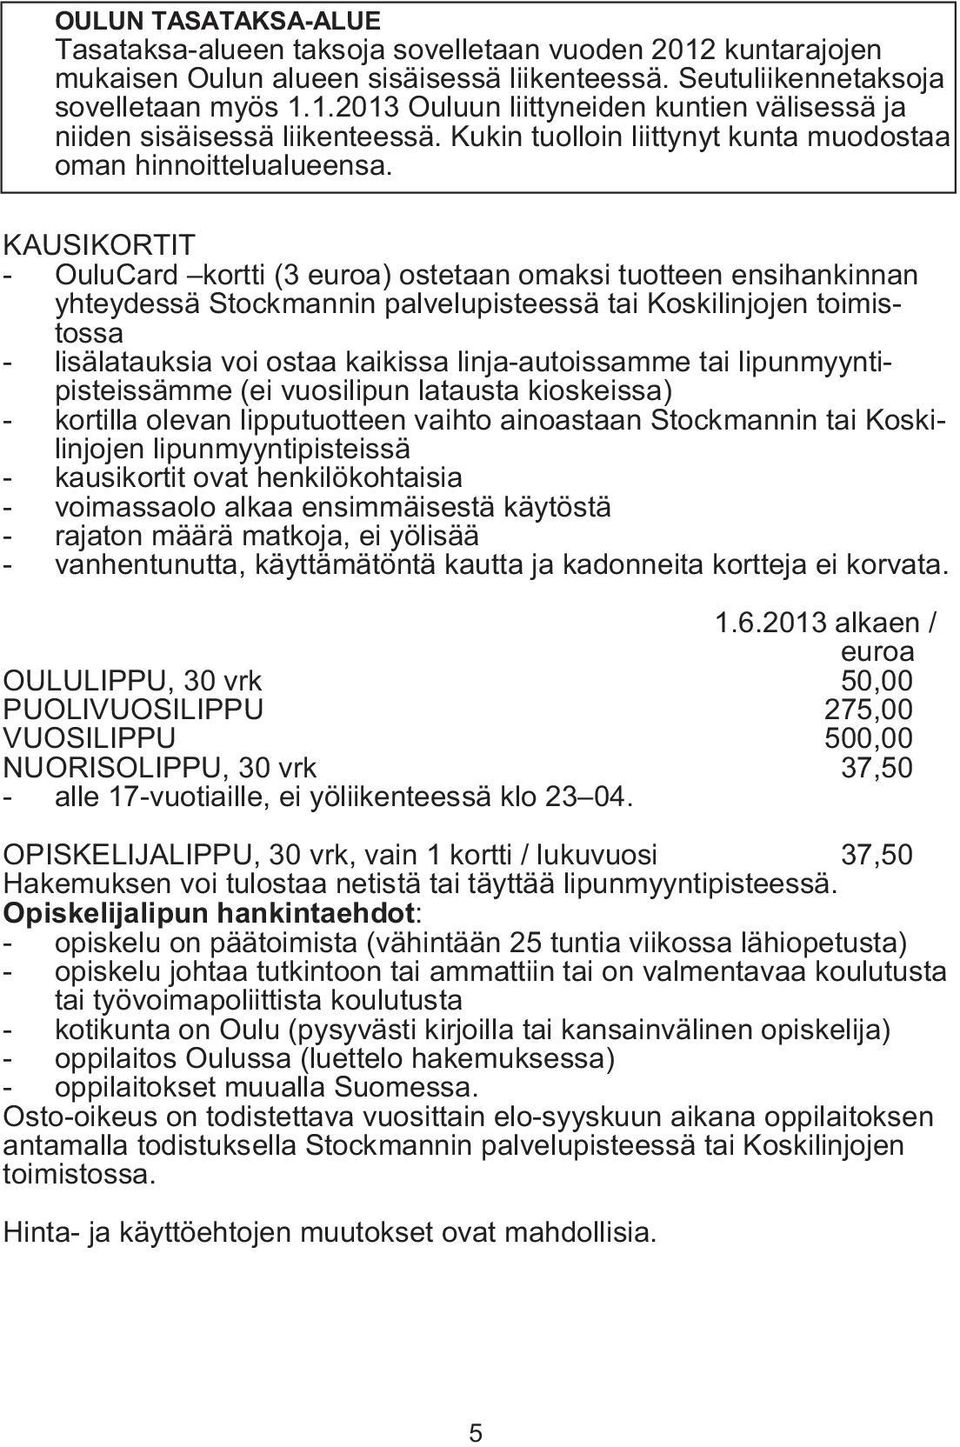 KAUSIKORTIT - OuluCard kortti (3 euroa) ostetaan omaksi tuotteen ensihankinnan yhteydessä Stockmannin palvelupisteessä tai Koskilinjojen toimistossa - lisälatauksia voi ostaa kaikissa